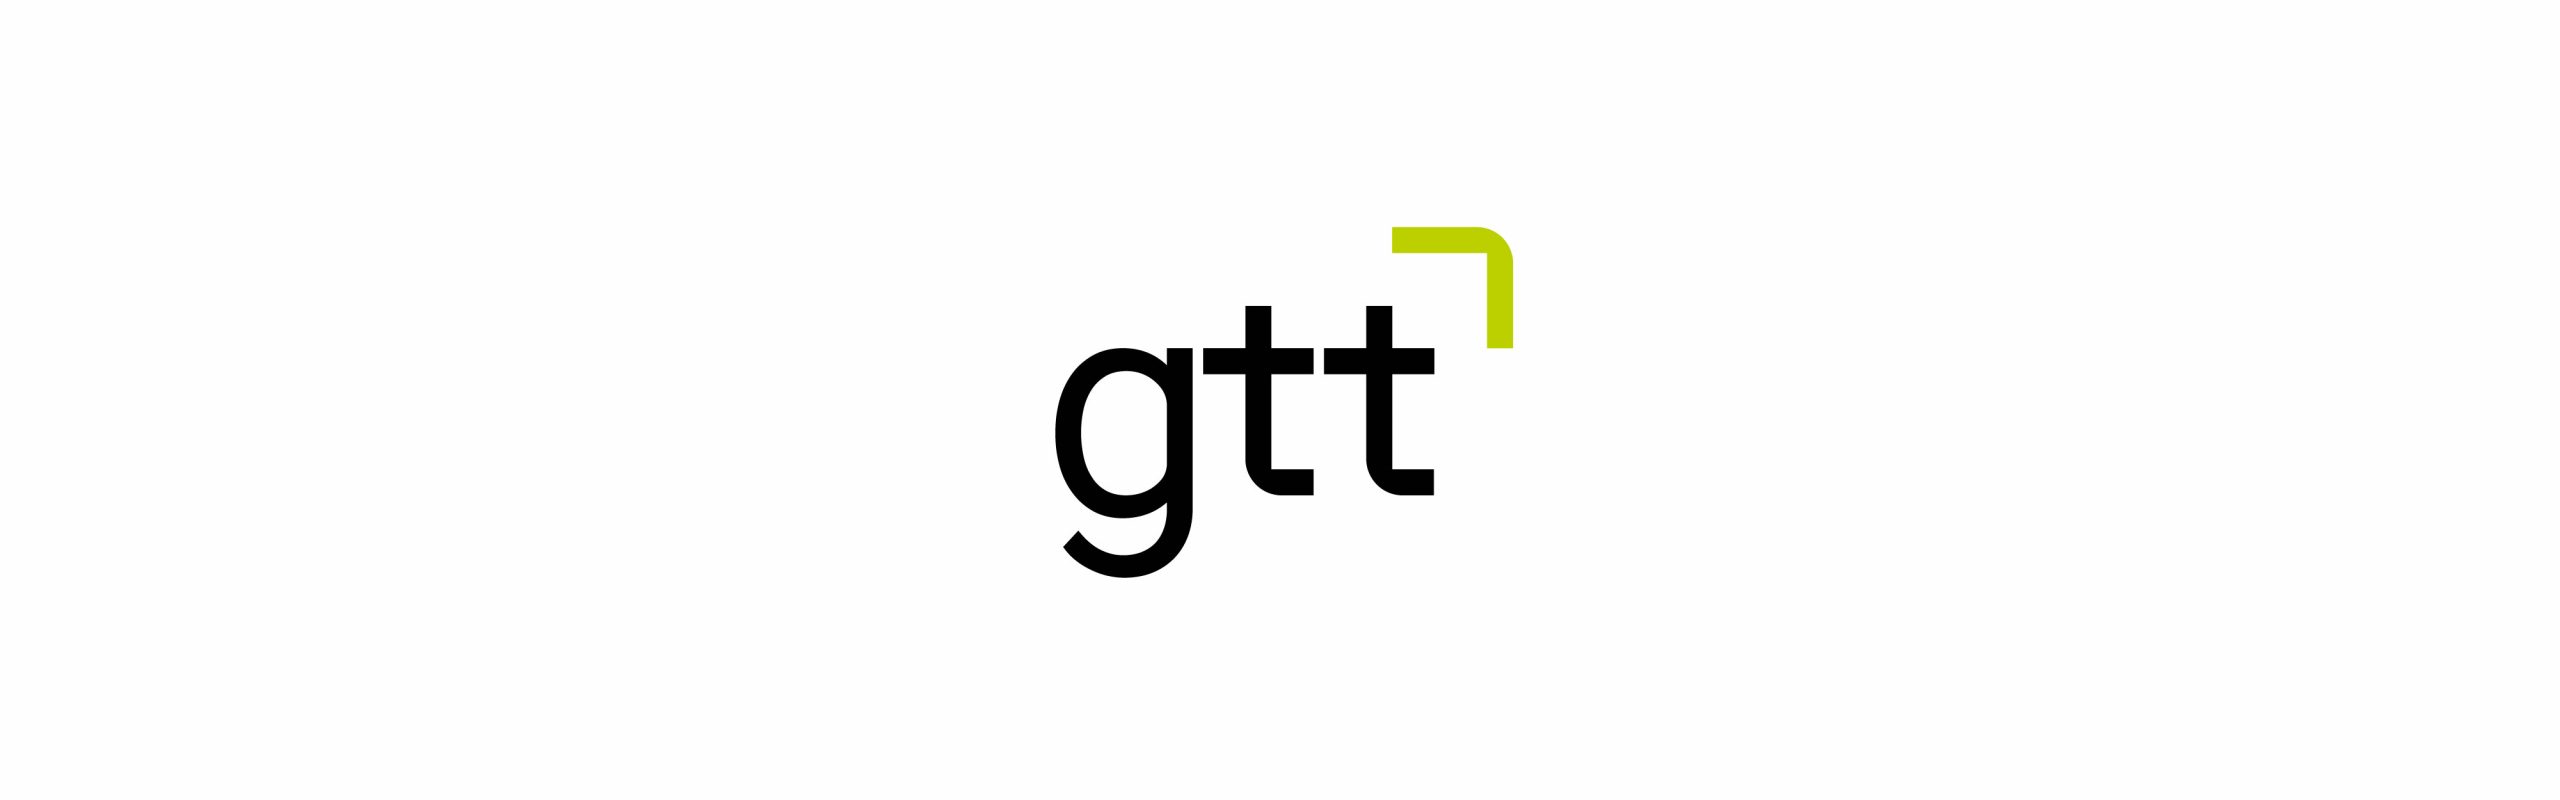 grupo gtt presenta una imagen corporativa renovada que identifica su evolución tecnológica, así como la proyección de crecimiento exponencial de la compañía.